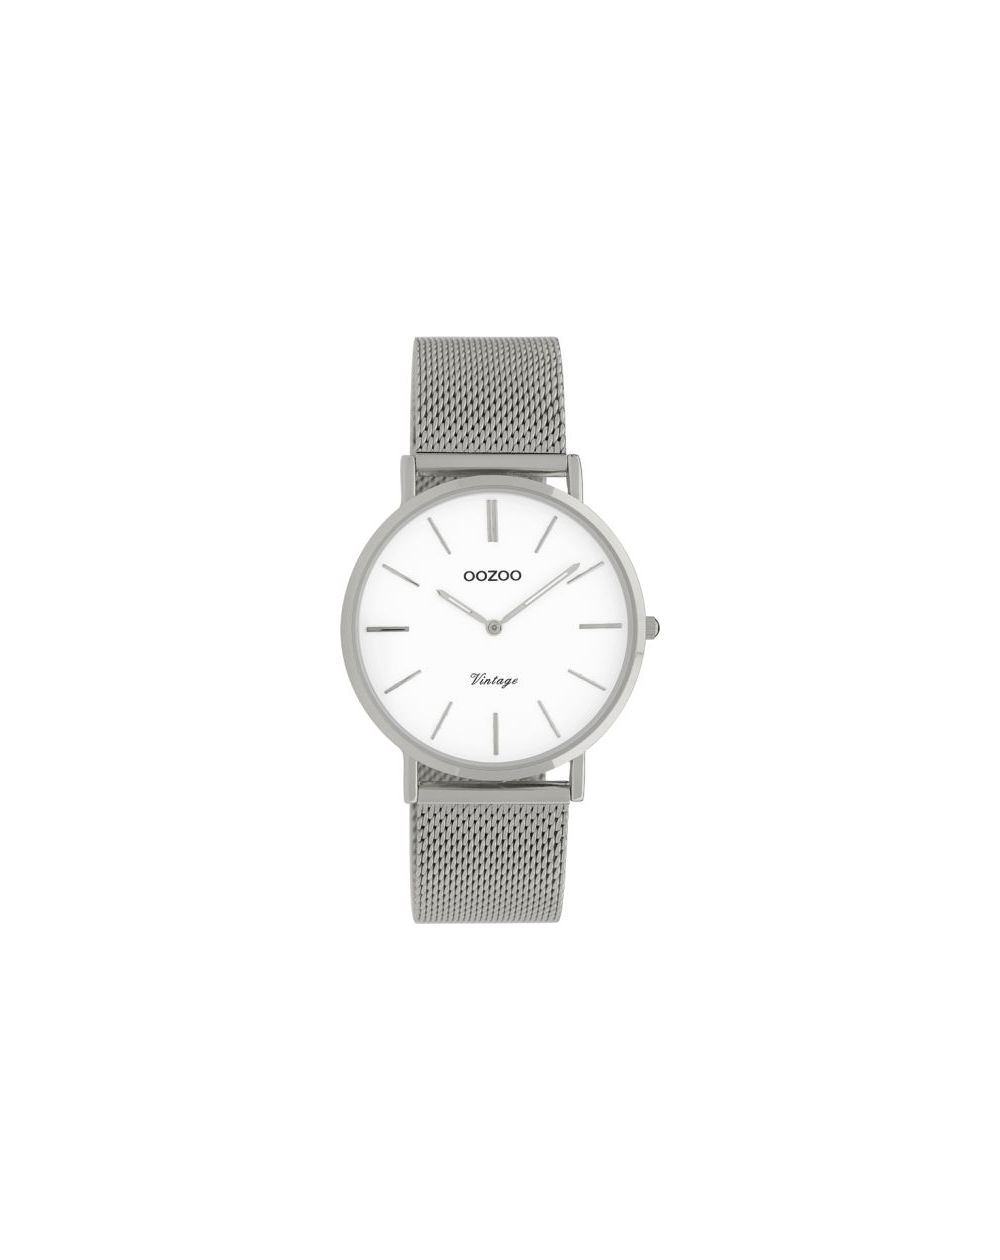 Oozoo montre/watch/horloge C9902